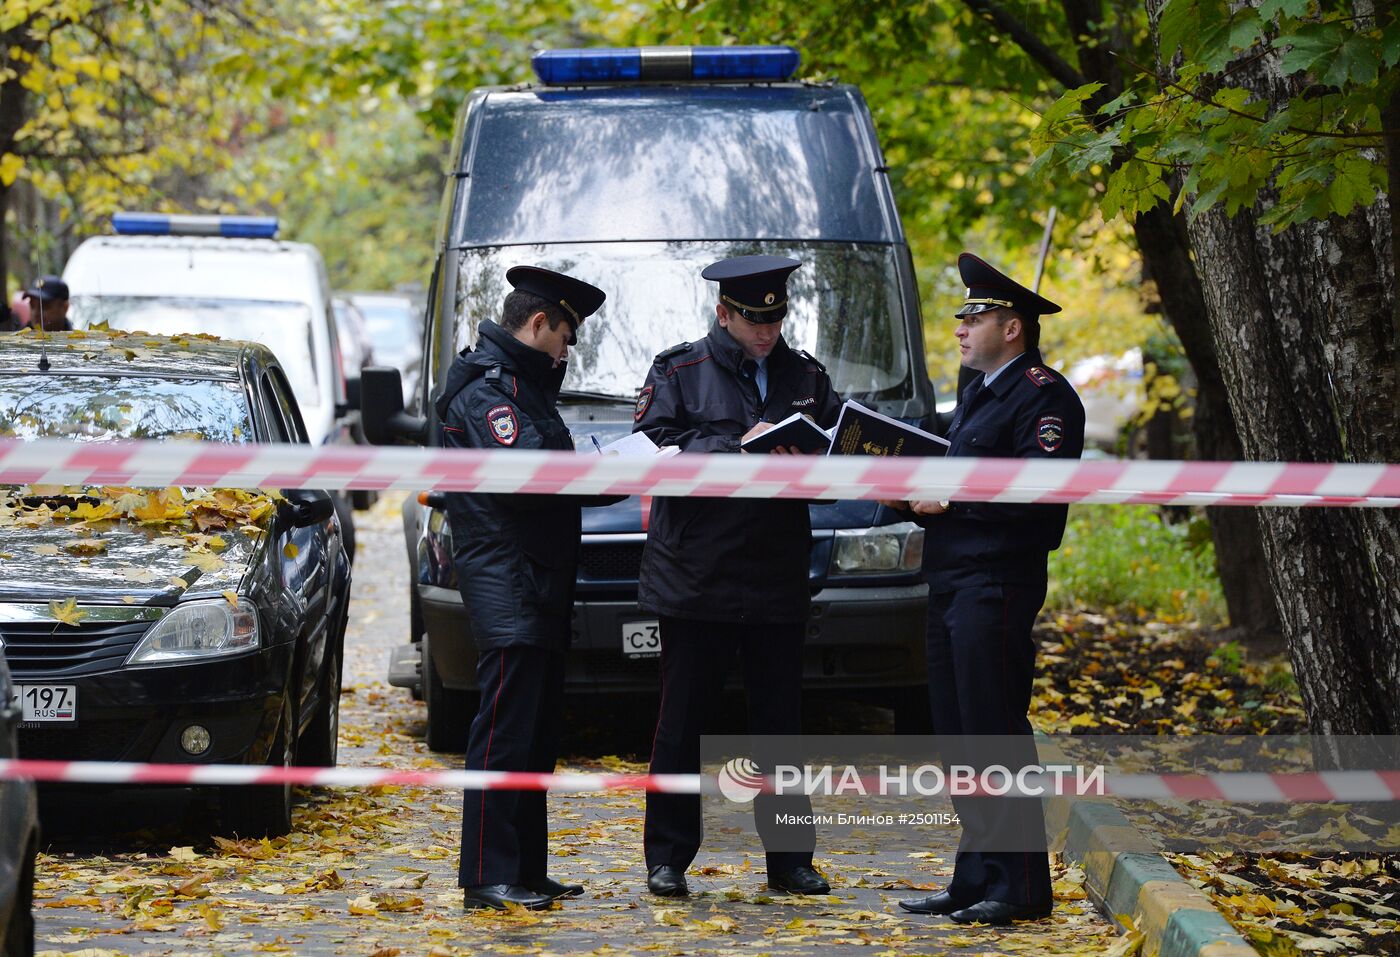 Тела четырех человек нашли в Бирюлево